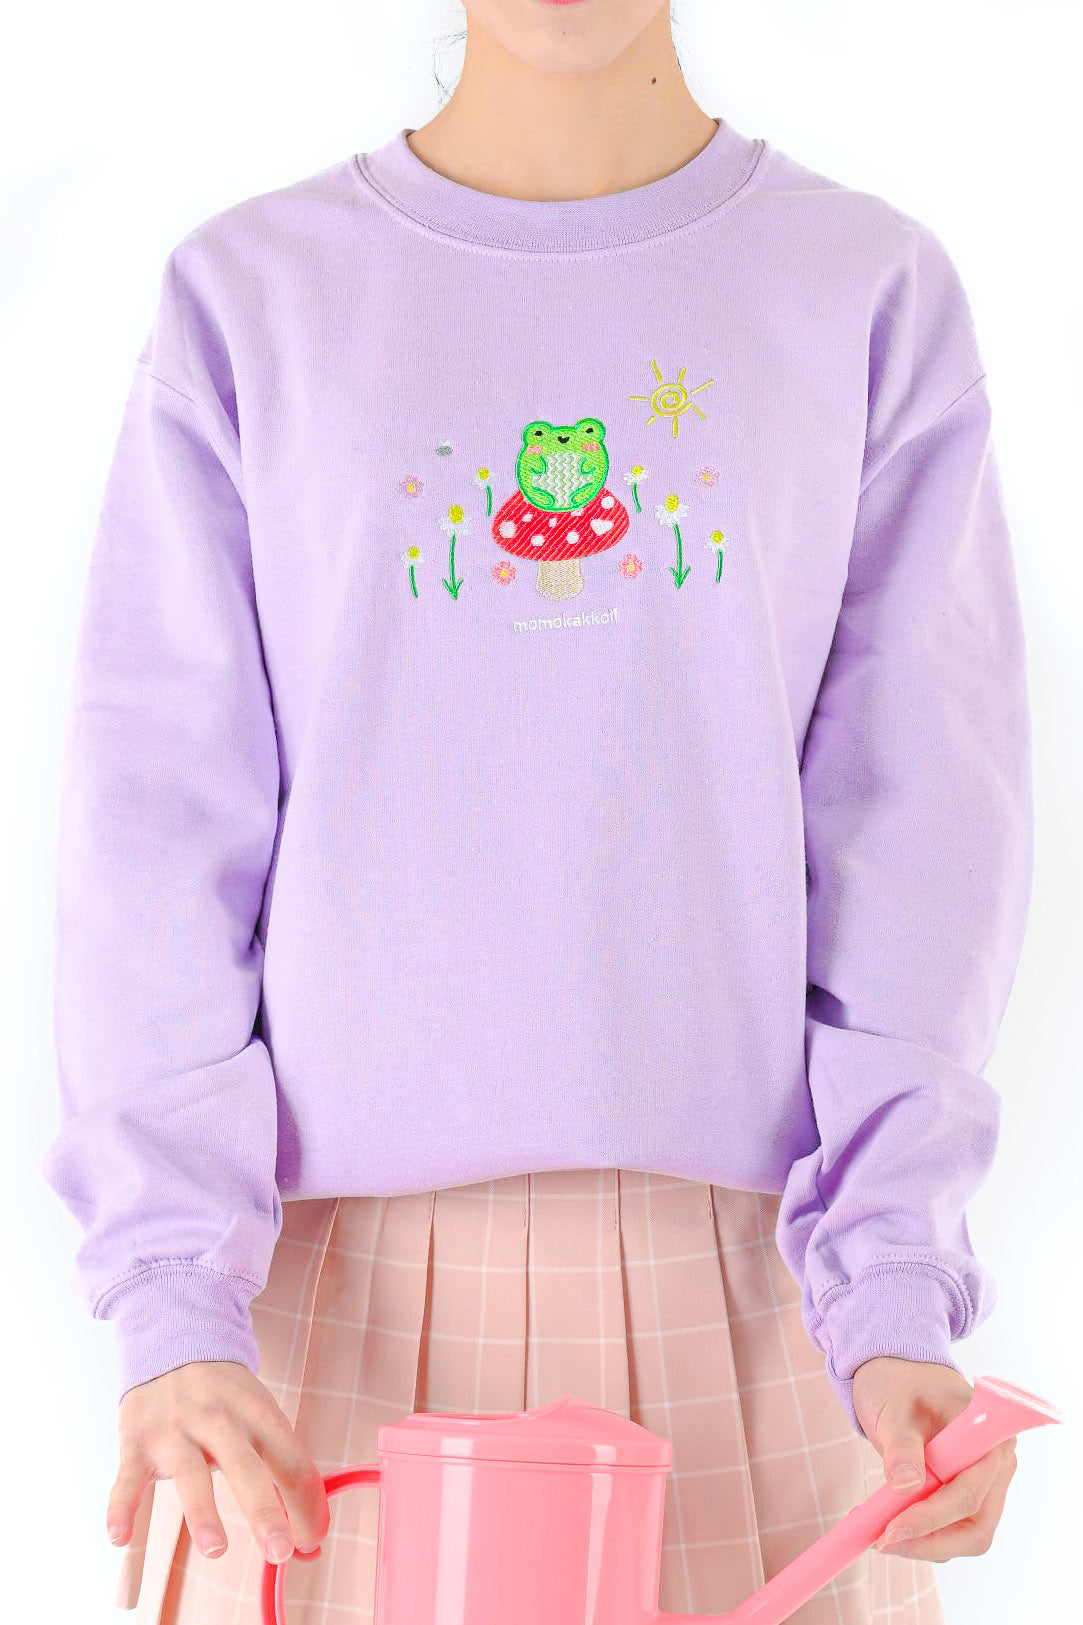 Froggy & Nature Embroidered Sweatshirt - Momokakkoii